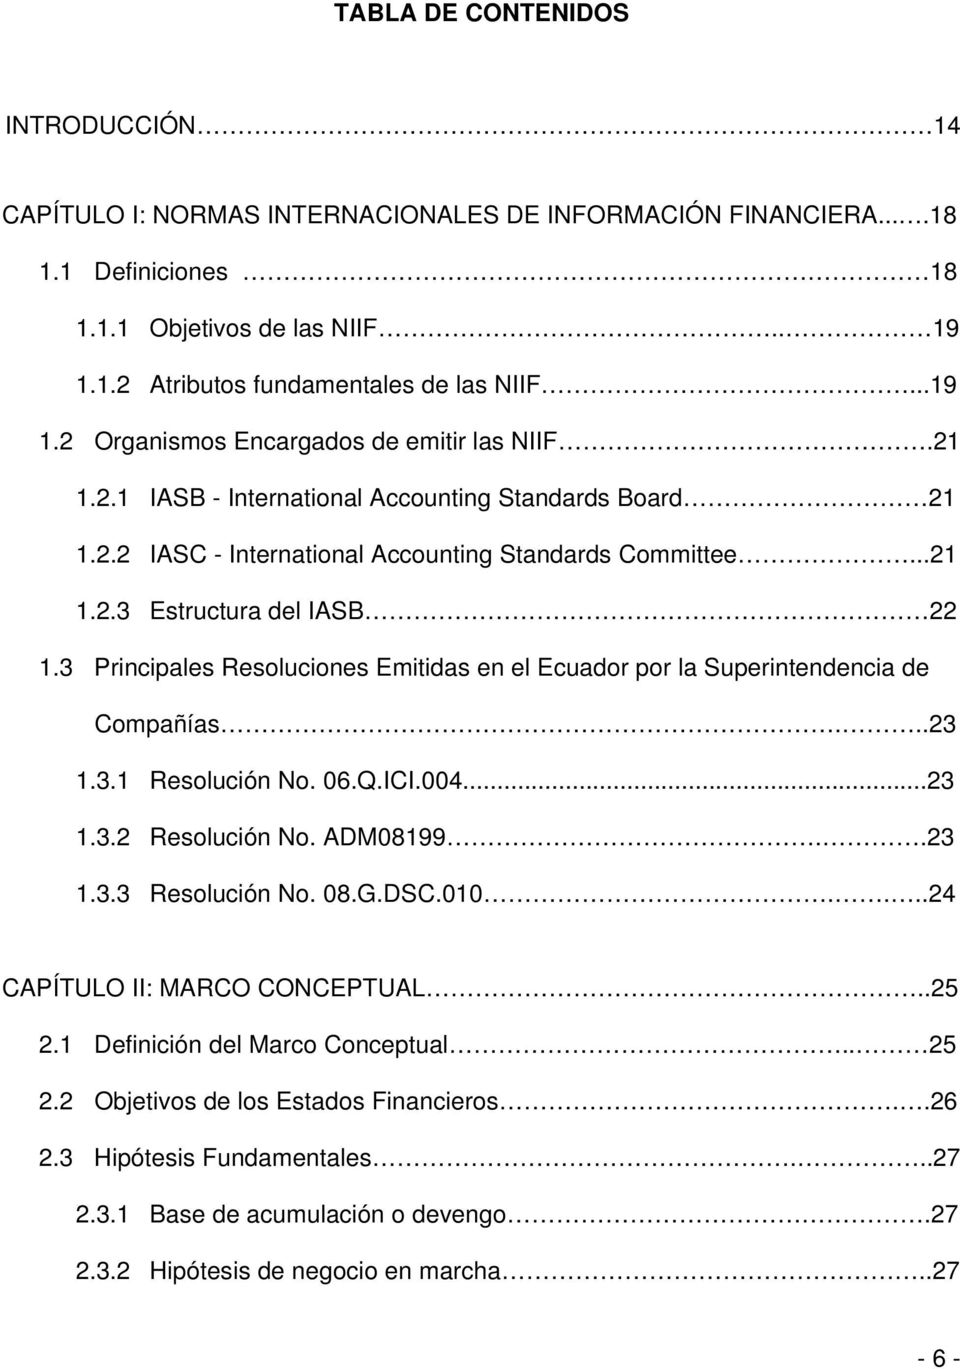 3 Principales Resoluciones Emitidas en el Ecuador por la Superintendencia de Compañías...23 1.3.1 Resolución No. 06.Q.ICI.004...23 1.3.2 Resolución No. ADM08199..23 1.3.3 Resolución No. 08.G.DSC.010.